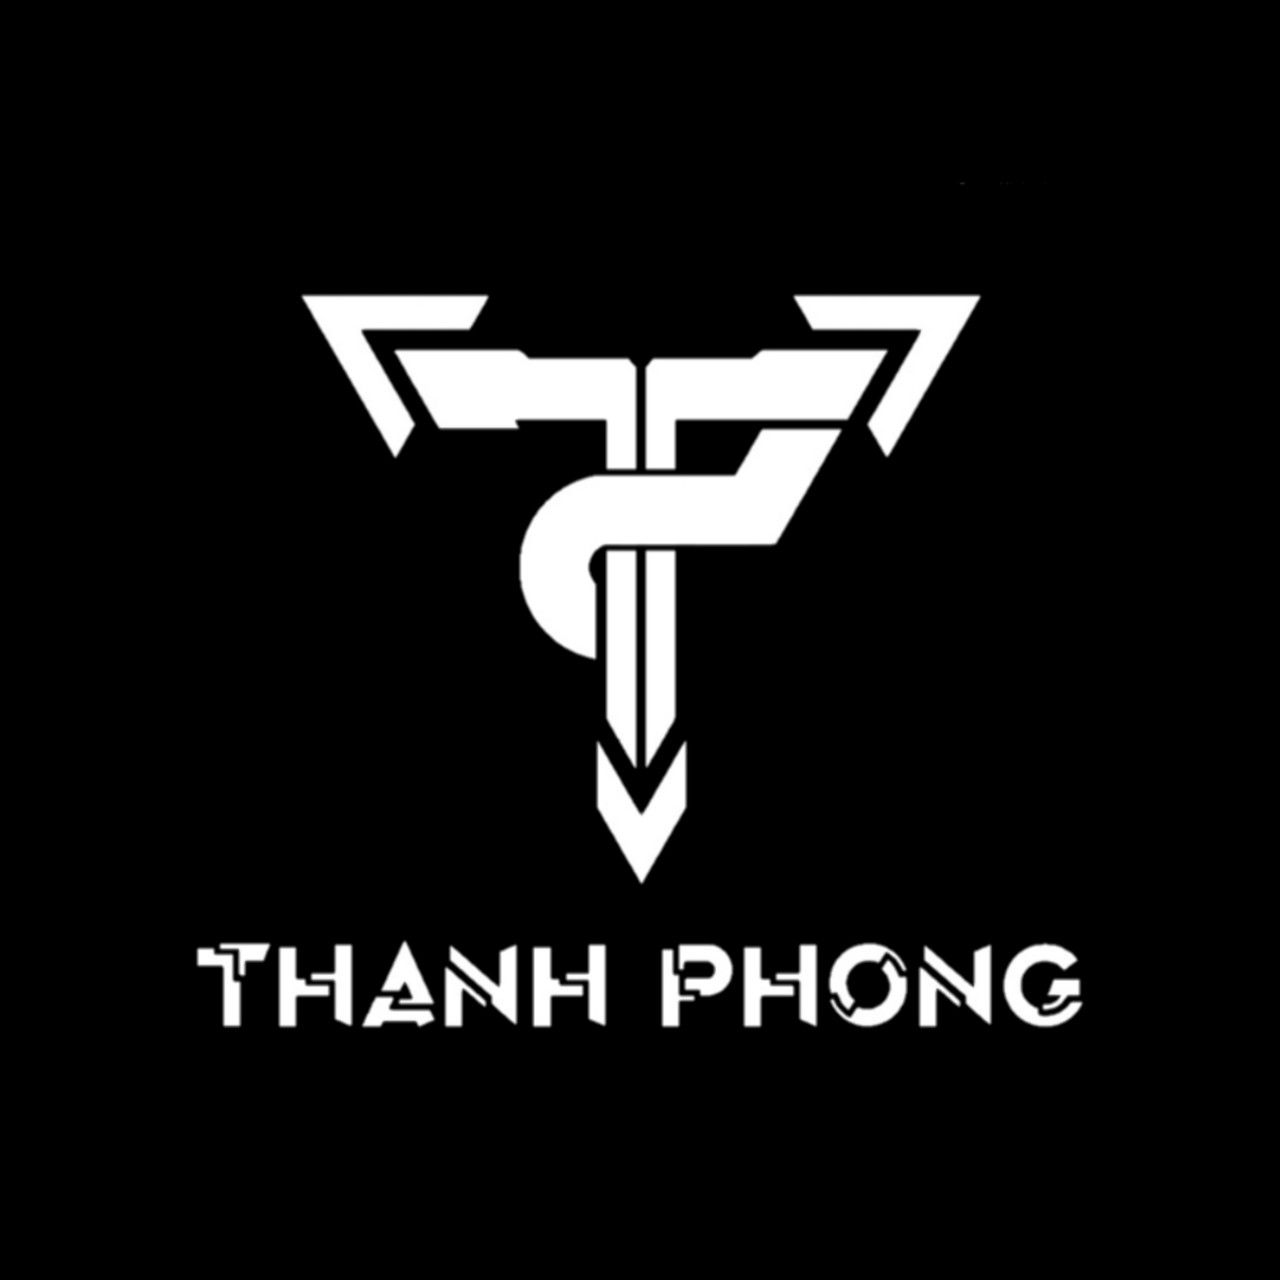 ڈاؤن لوڈ کریں Waiting For Thanh Phong